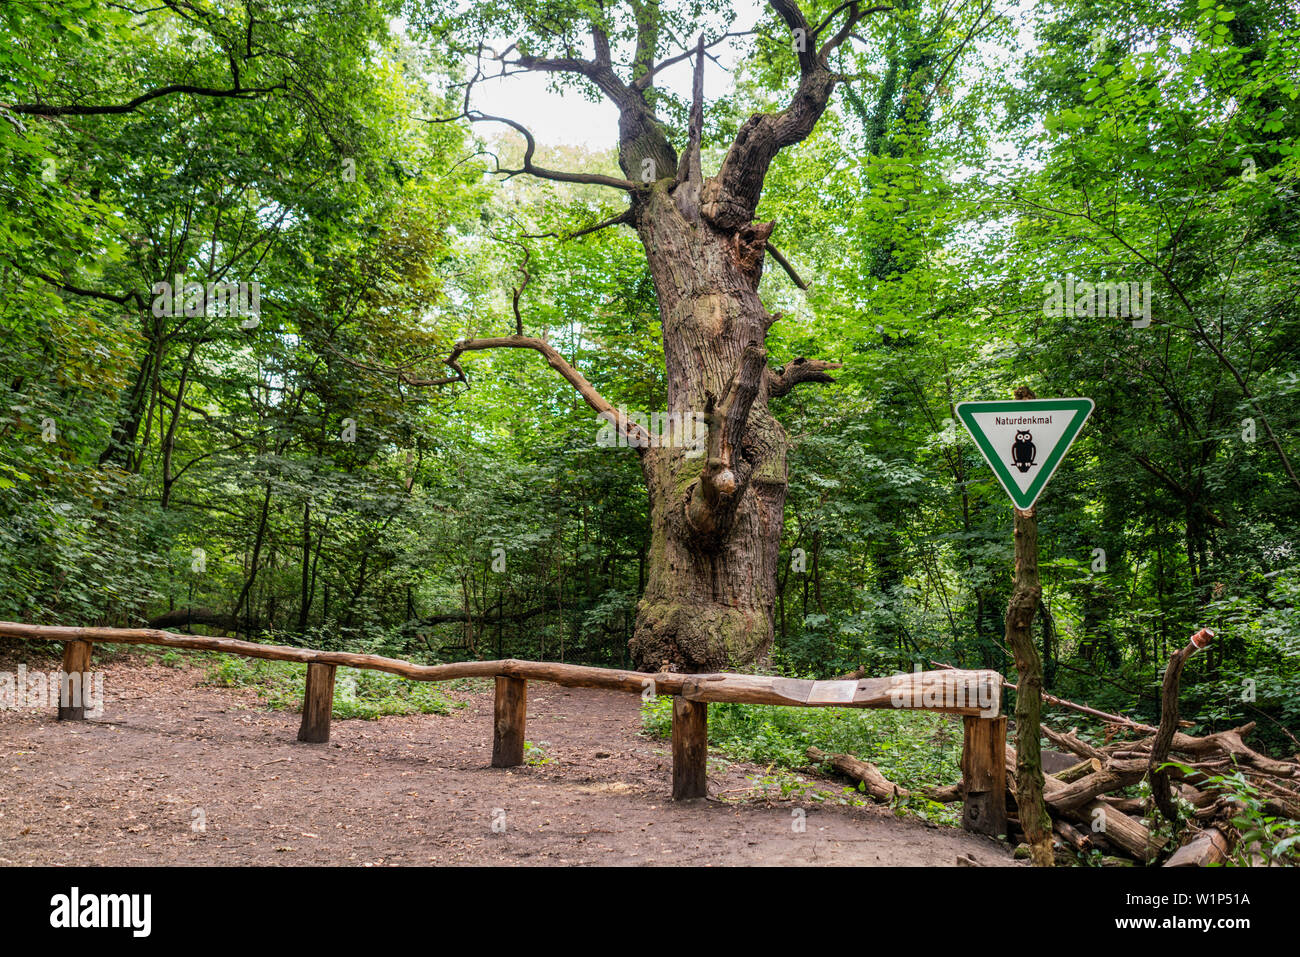 Dicke Marie, aeltester Baum von Berlin, ca. 500 bsi 700 Jahre alt, Durchmnesser 665 cm, Hoehe 26 Meter, Querus robur , Stieleiche, Tegeler See, Berlin Stock Photo